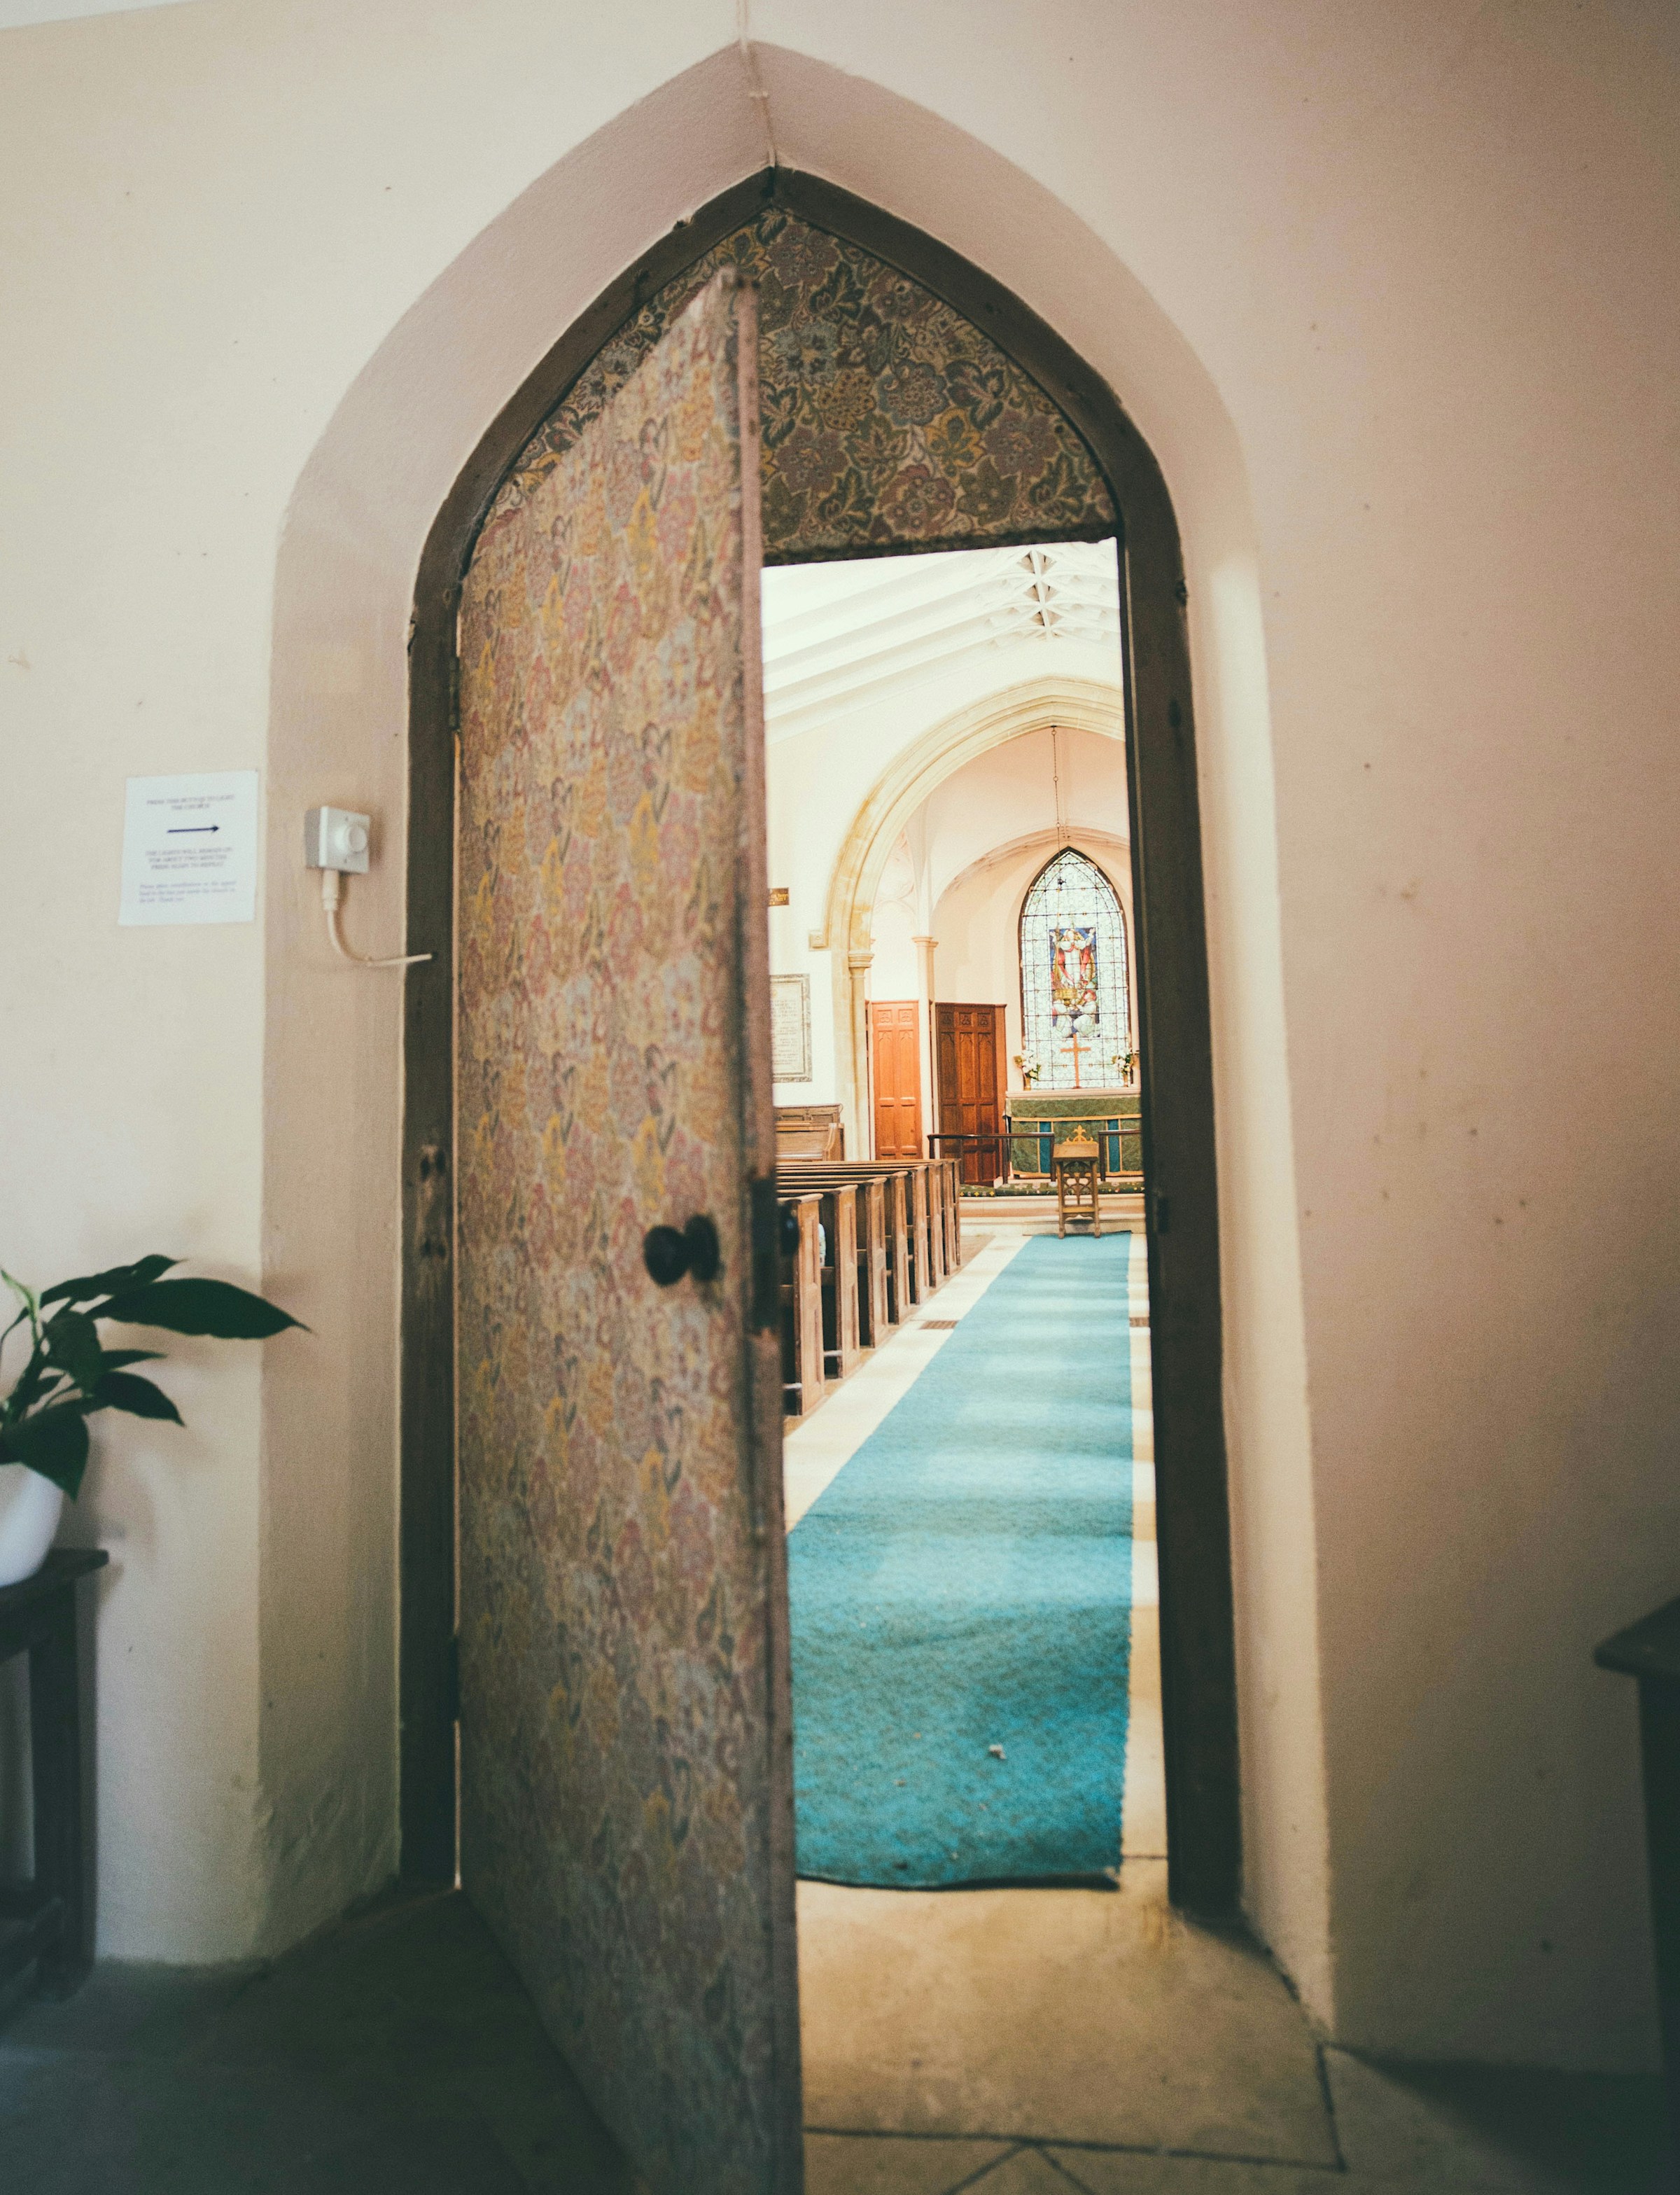 An open church door | Source: Pexels